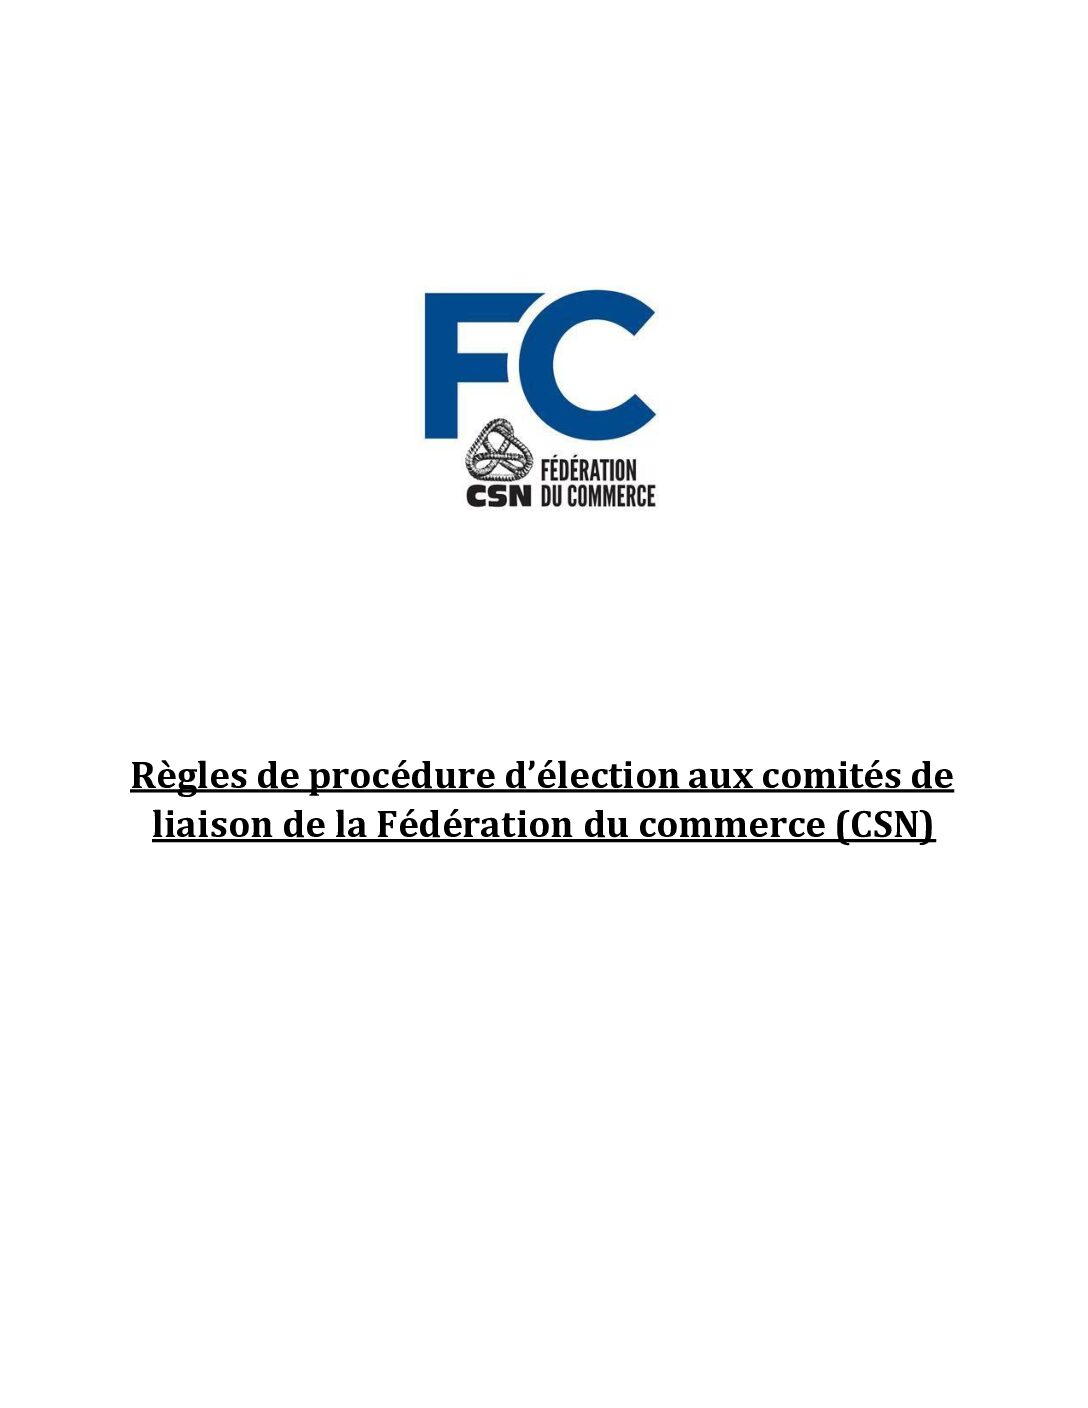 Règles de procédure d'élections aux comités de liaison de la FC–CSN